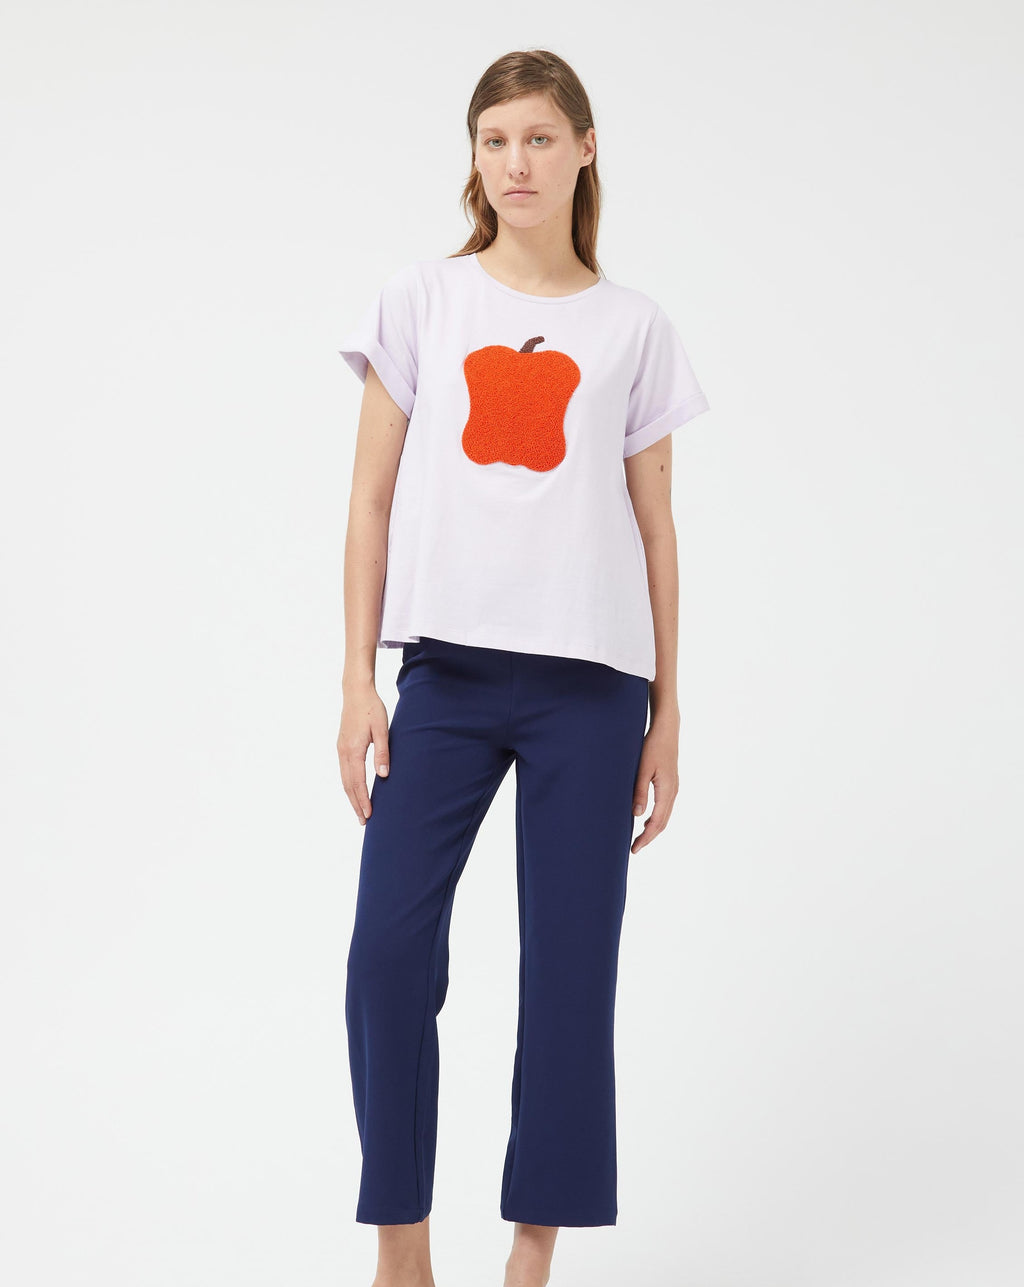 Compania - Apple Tshirt